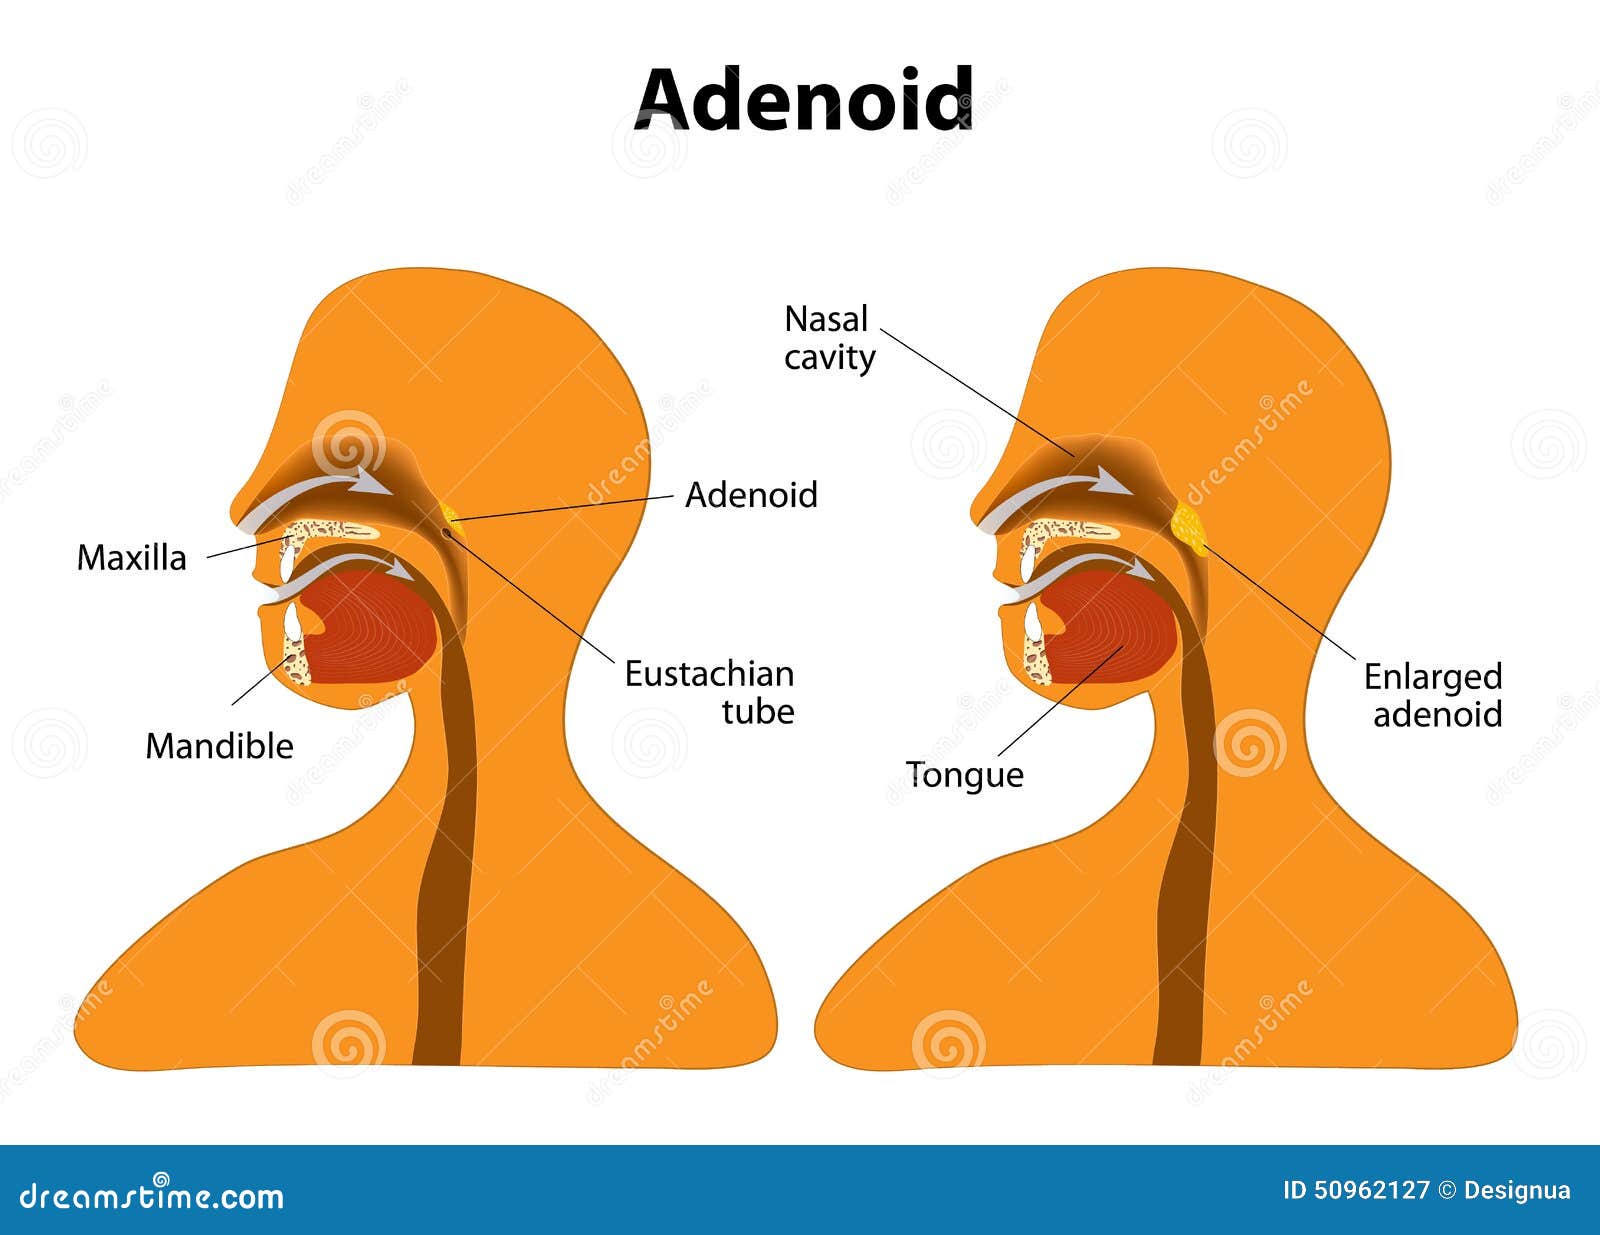 adenoids diagram